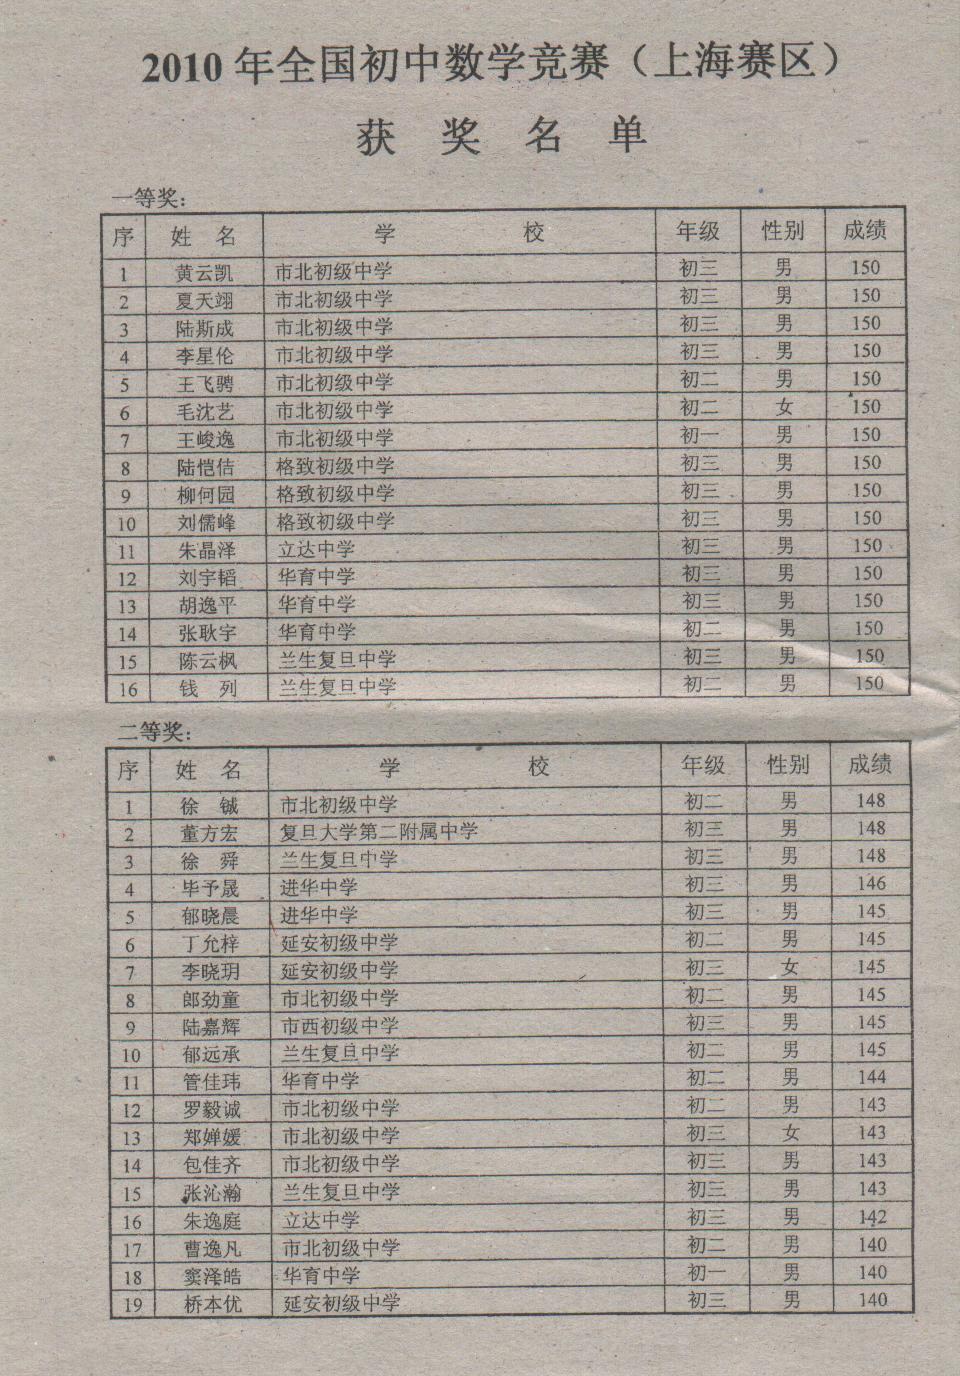 2010年全国初中数学竞赛（上海赛区）获奖名单 001.jpg